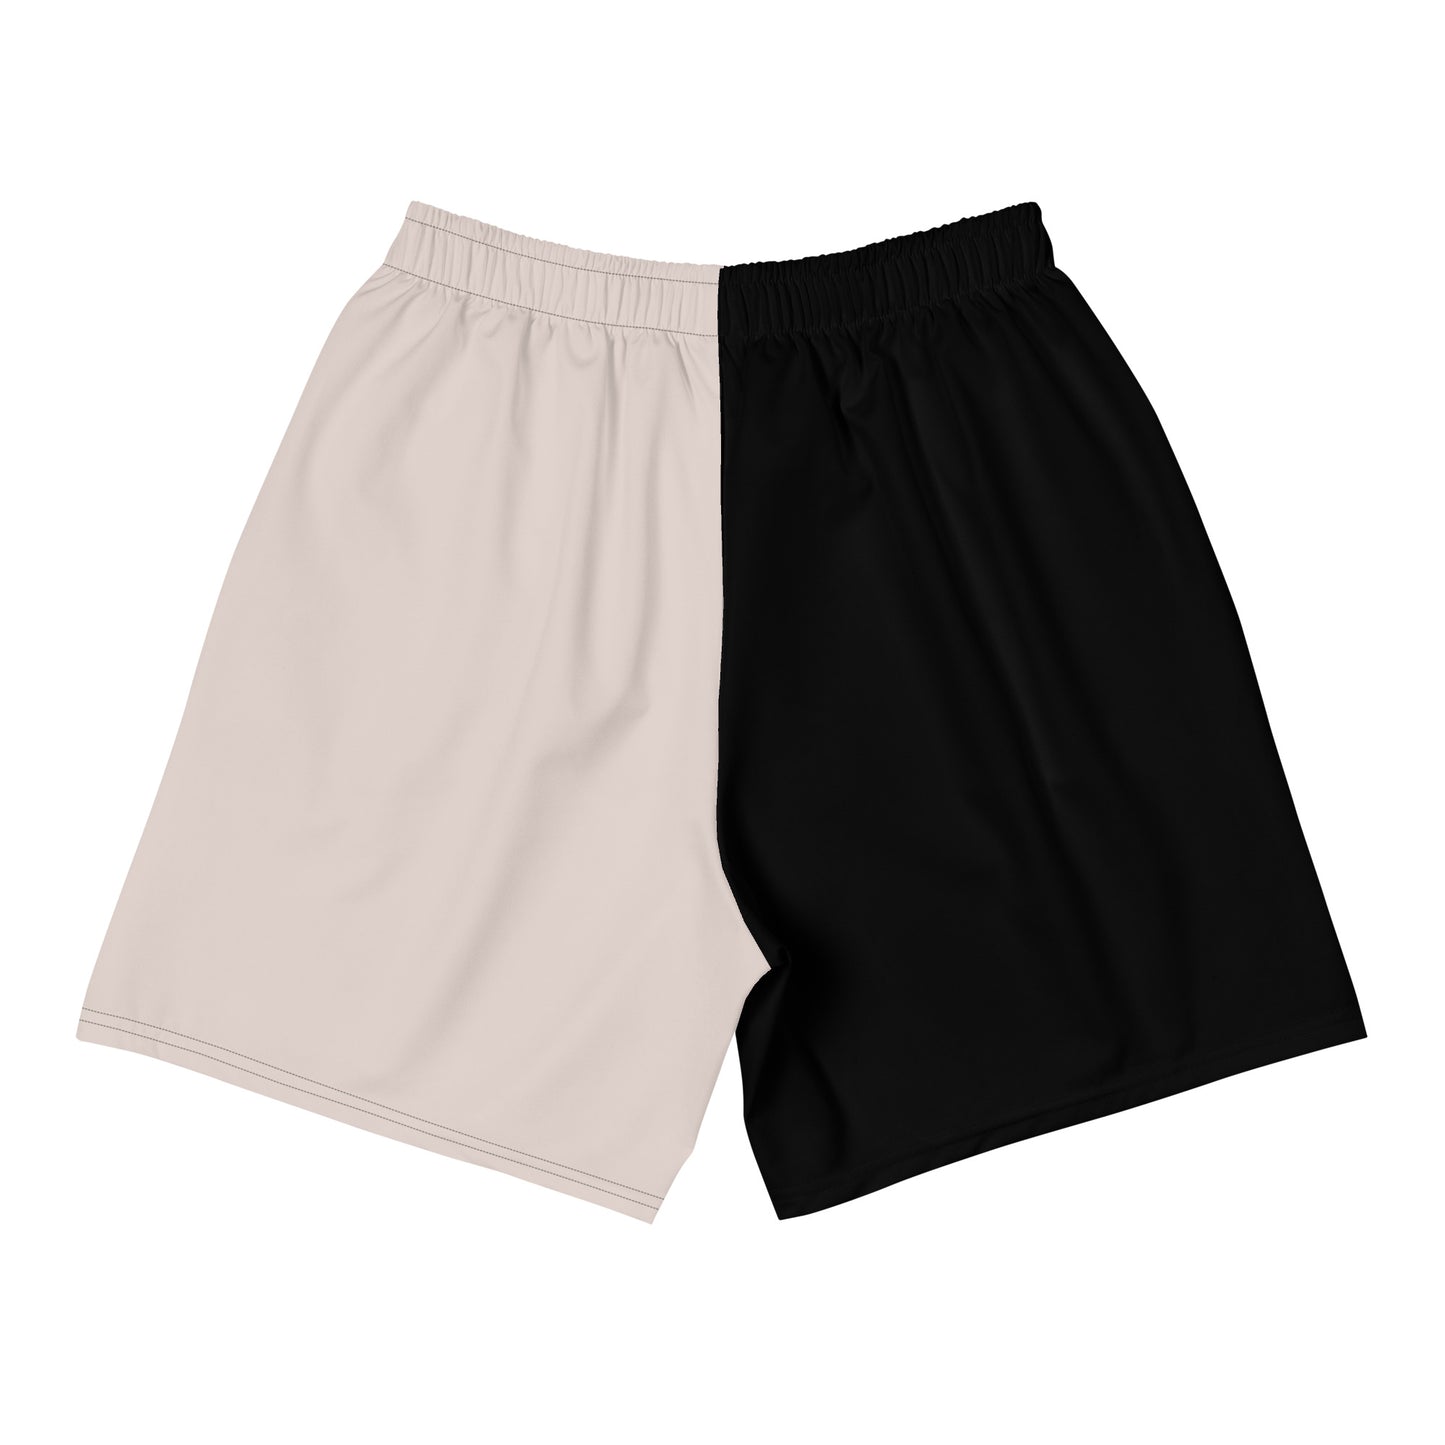 Elementary Threads (Black/Khaki) Two Tone Athletic Shorts